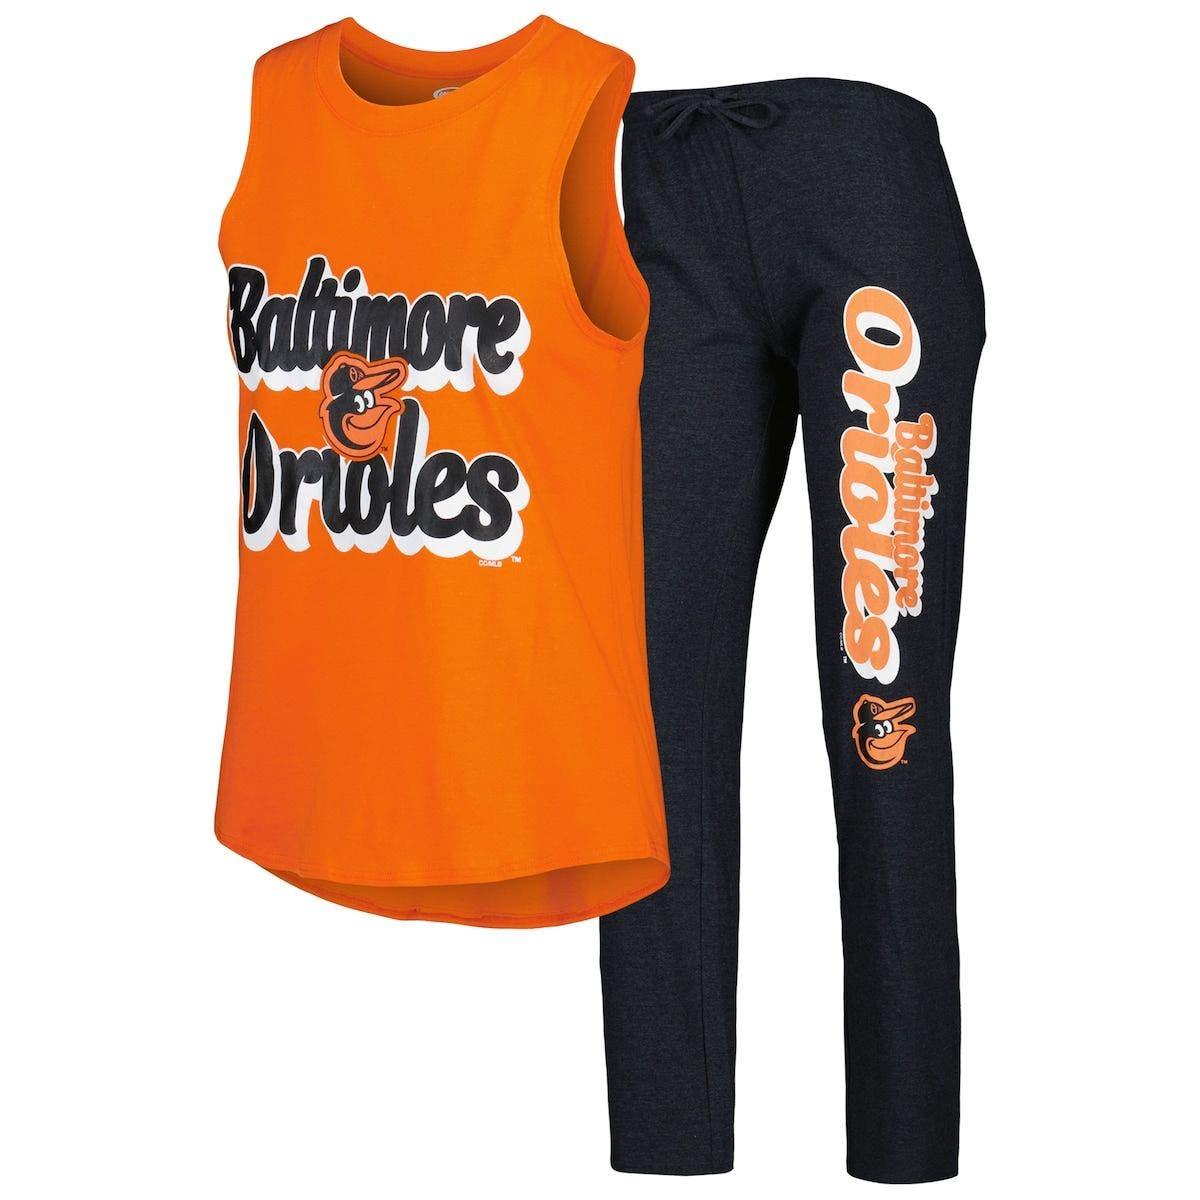 concept orange mets jersey